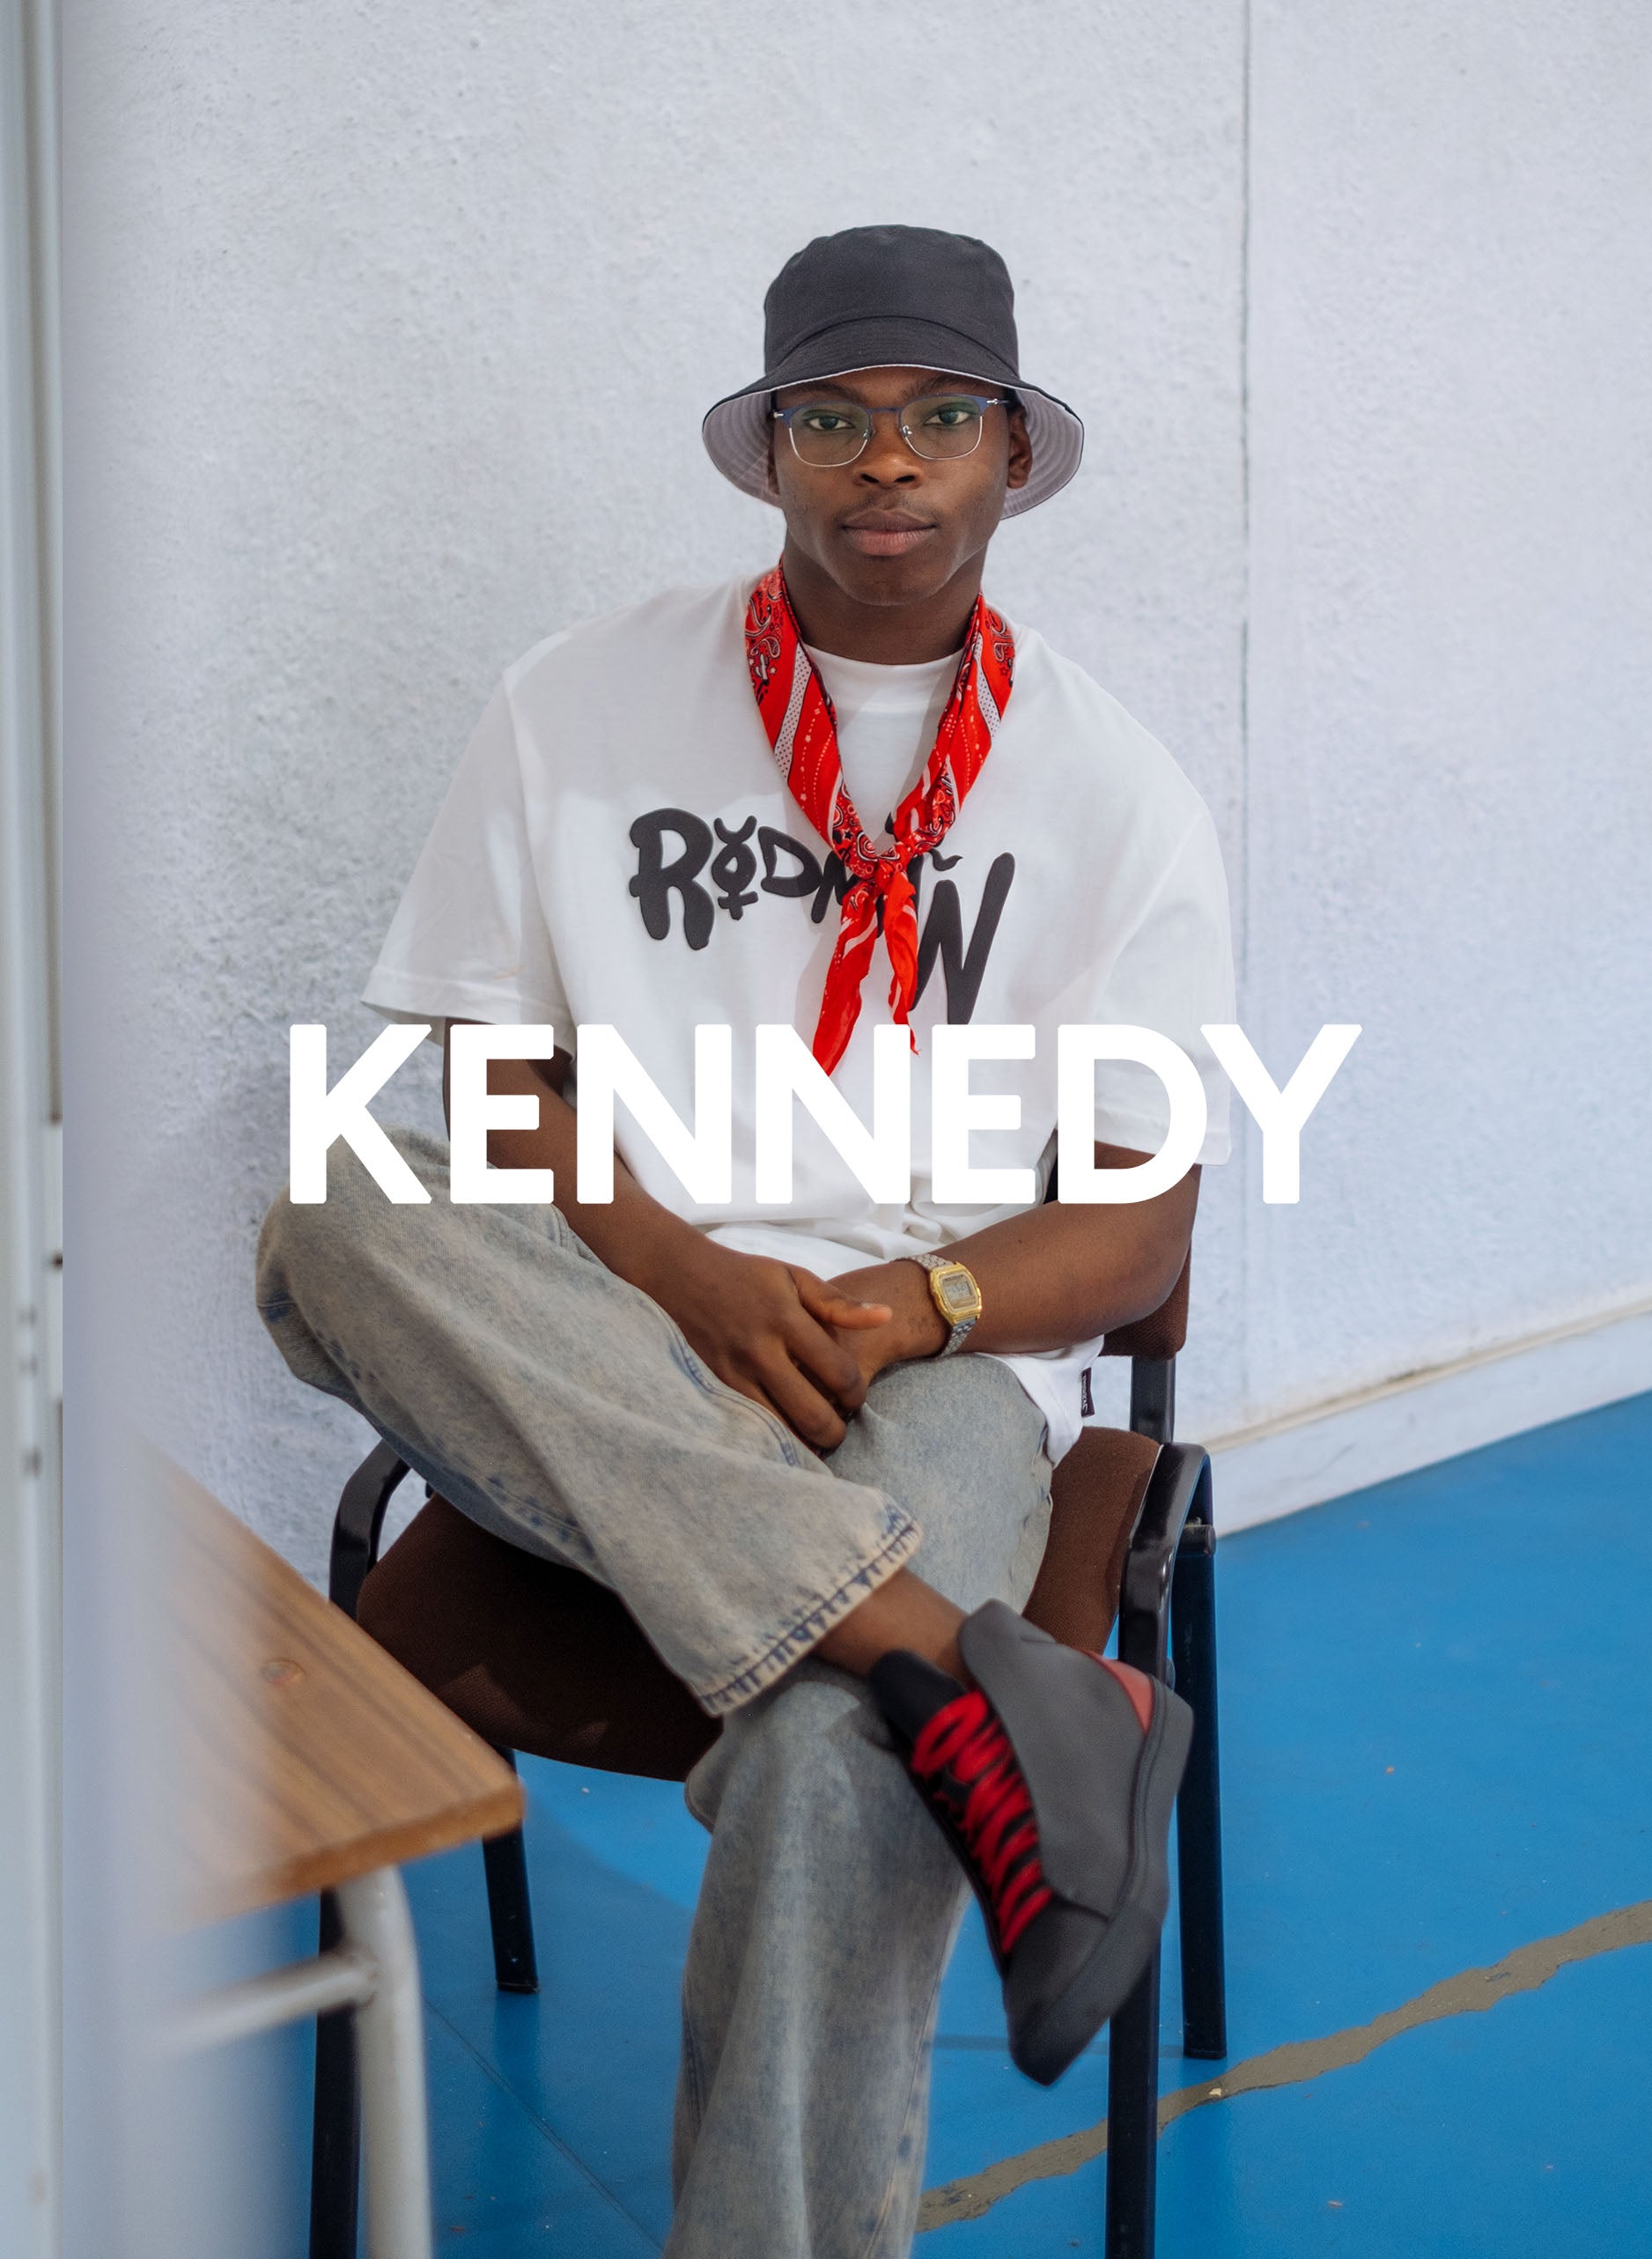 Kennedy sitzt auf einem Stuhl und trägt Diverge sneakers, die im Rahmen des Imagine-Projekts soziale Auswirkungen und maßgeschneiderte Schuhe präsentiert.